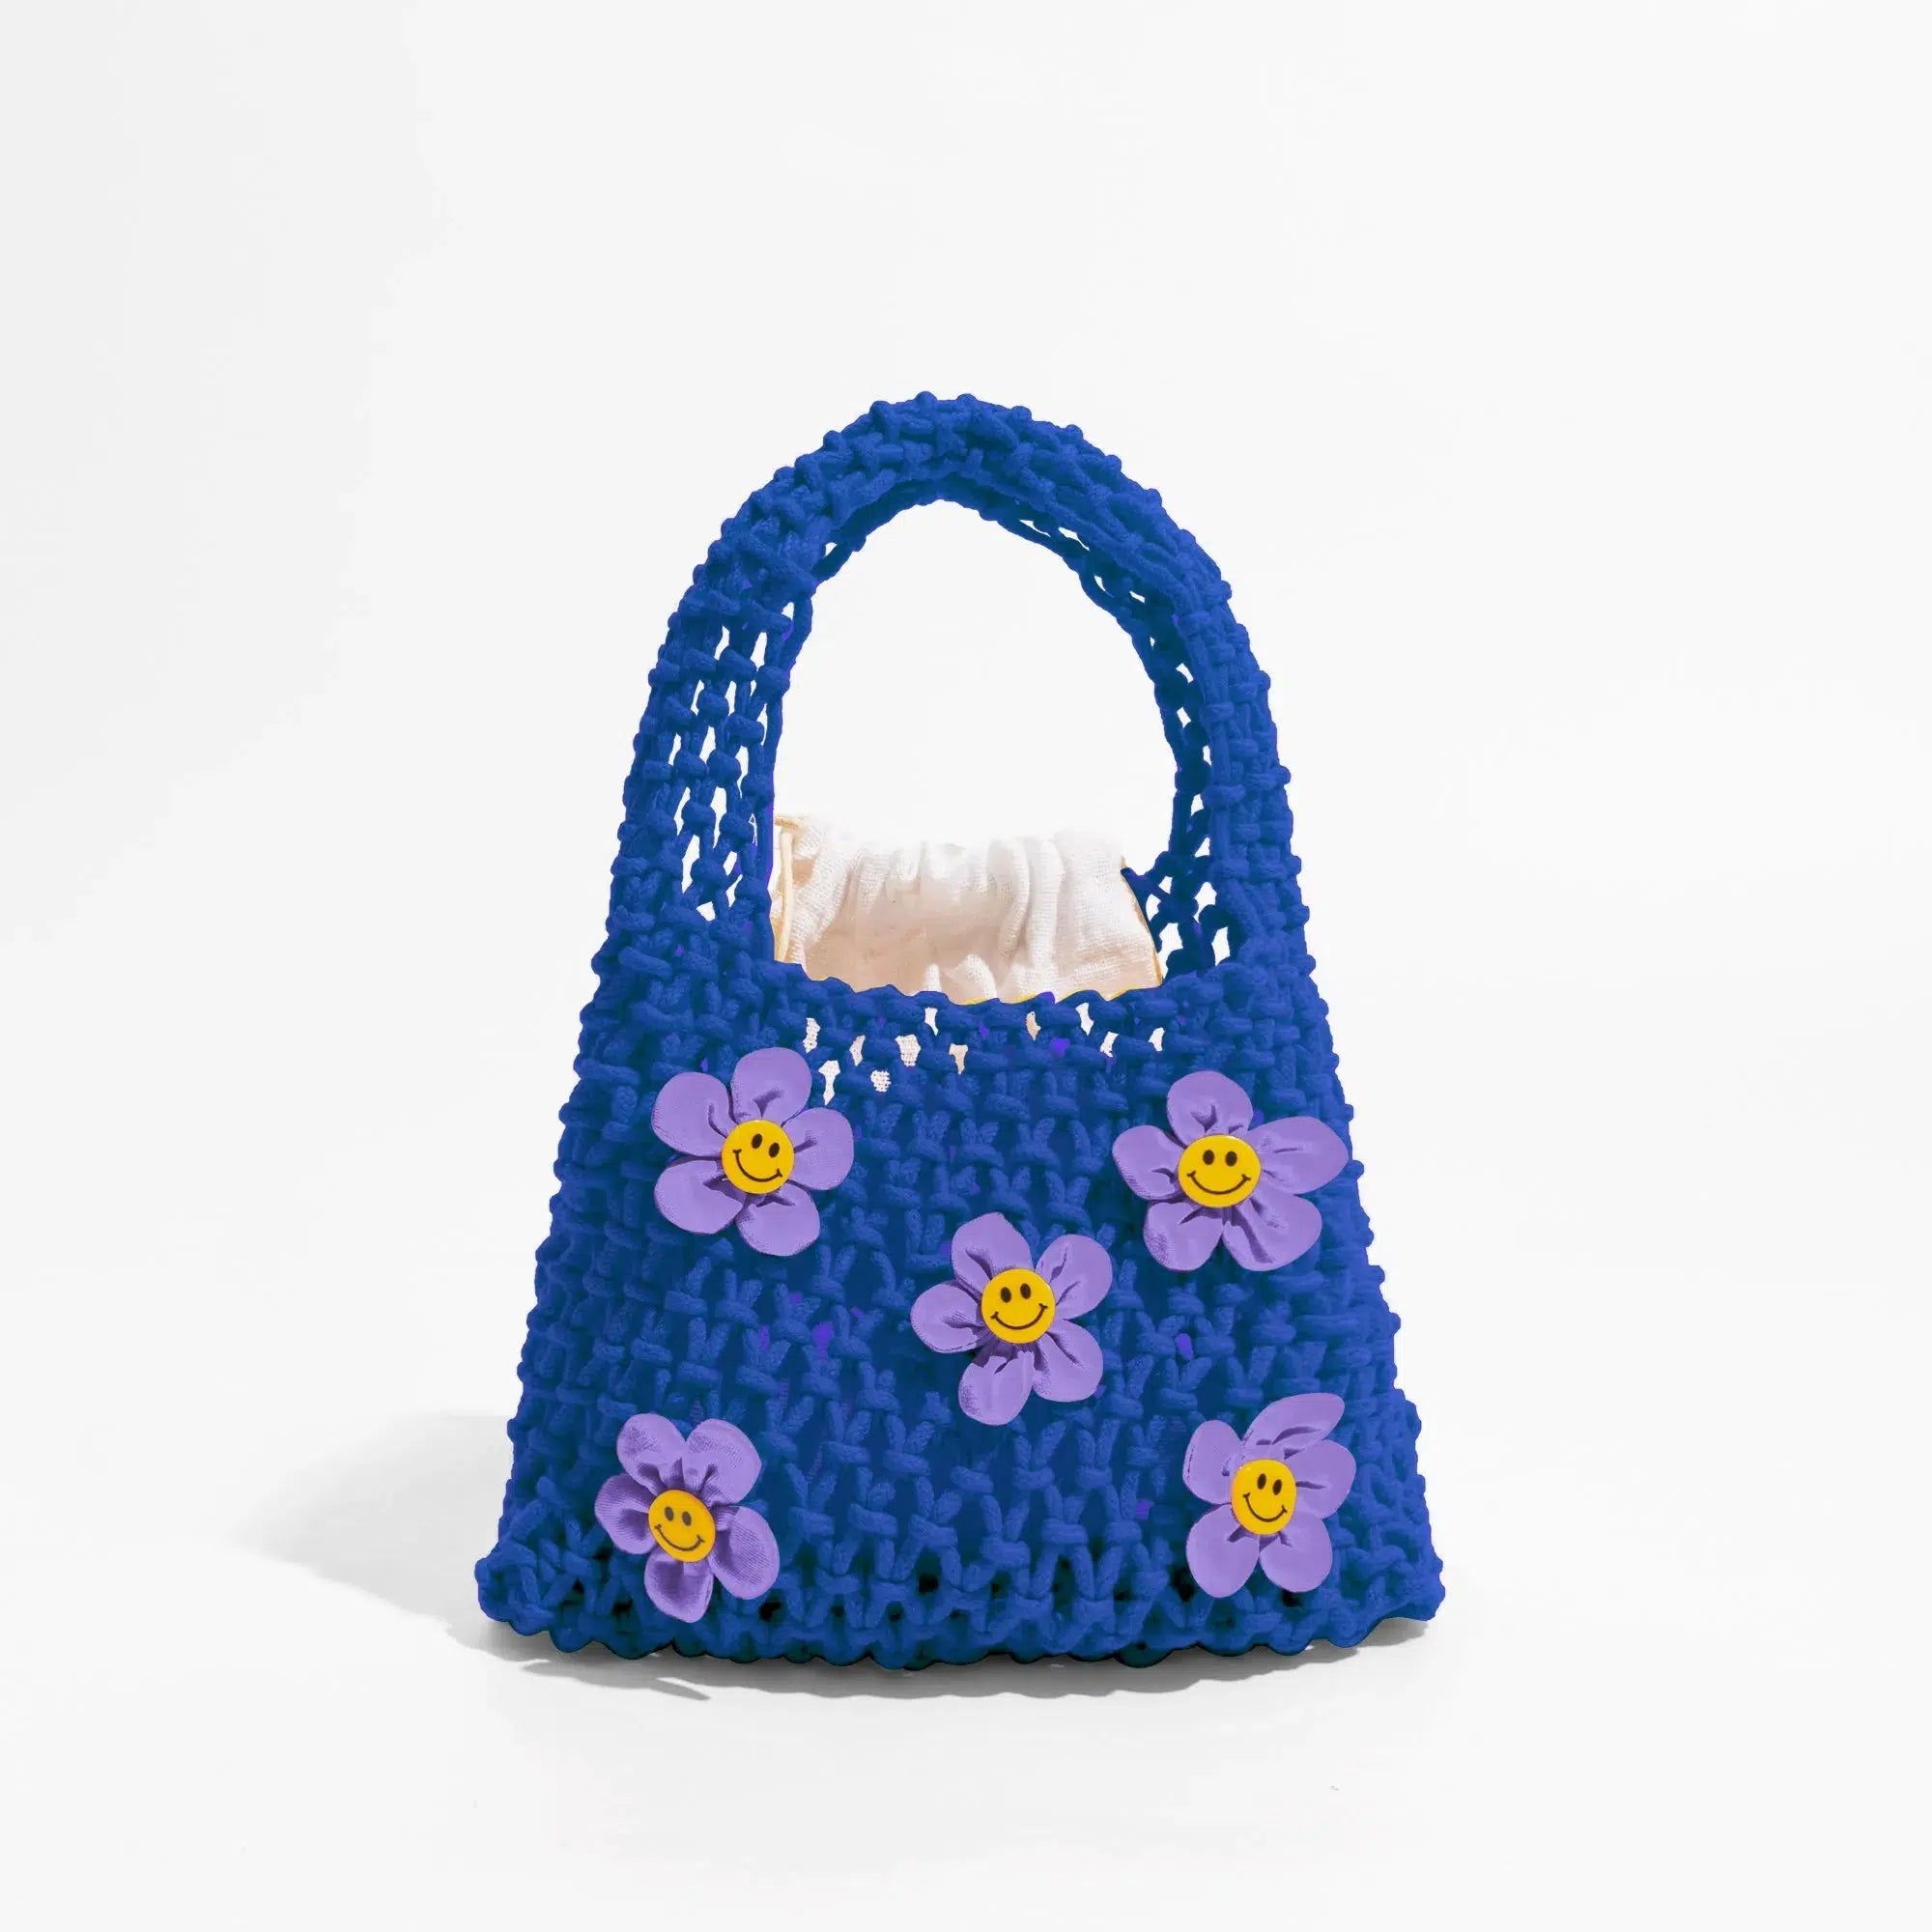 Indie Smiley Flowers Crochet Bag